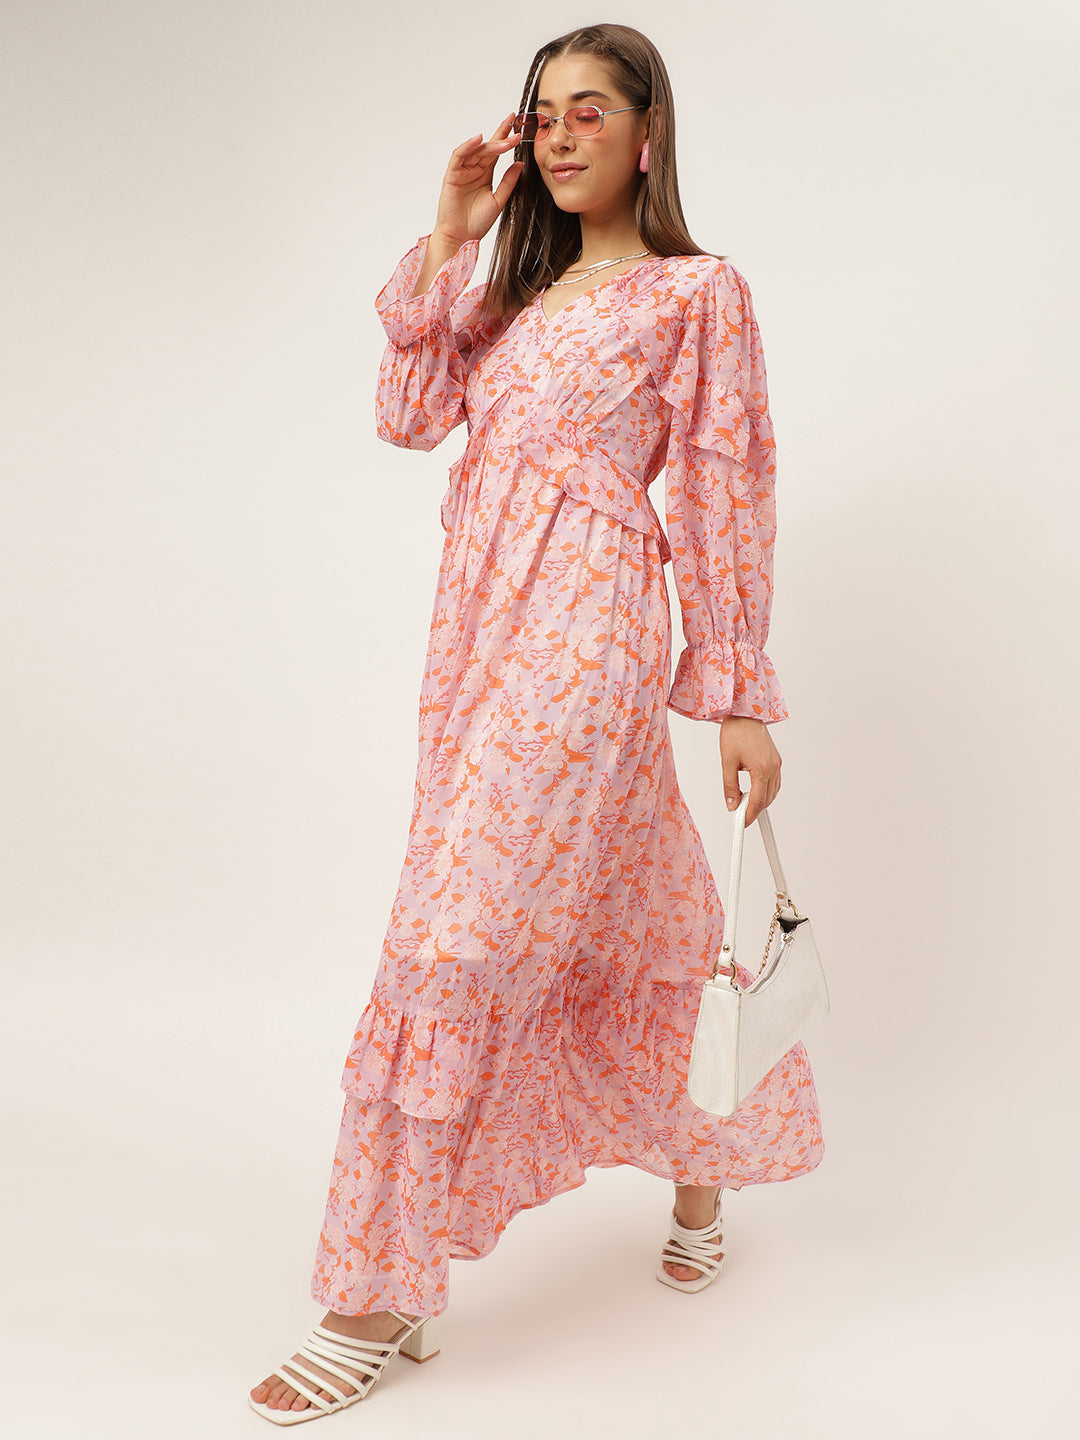 dresses for Women western wear Pale Pink Maxi Dress